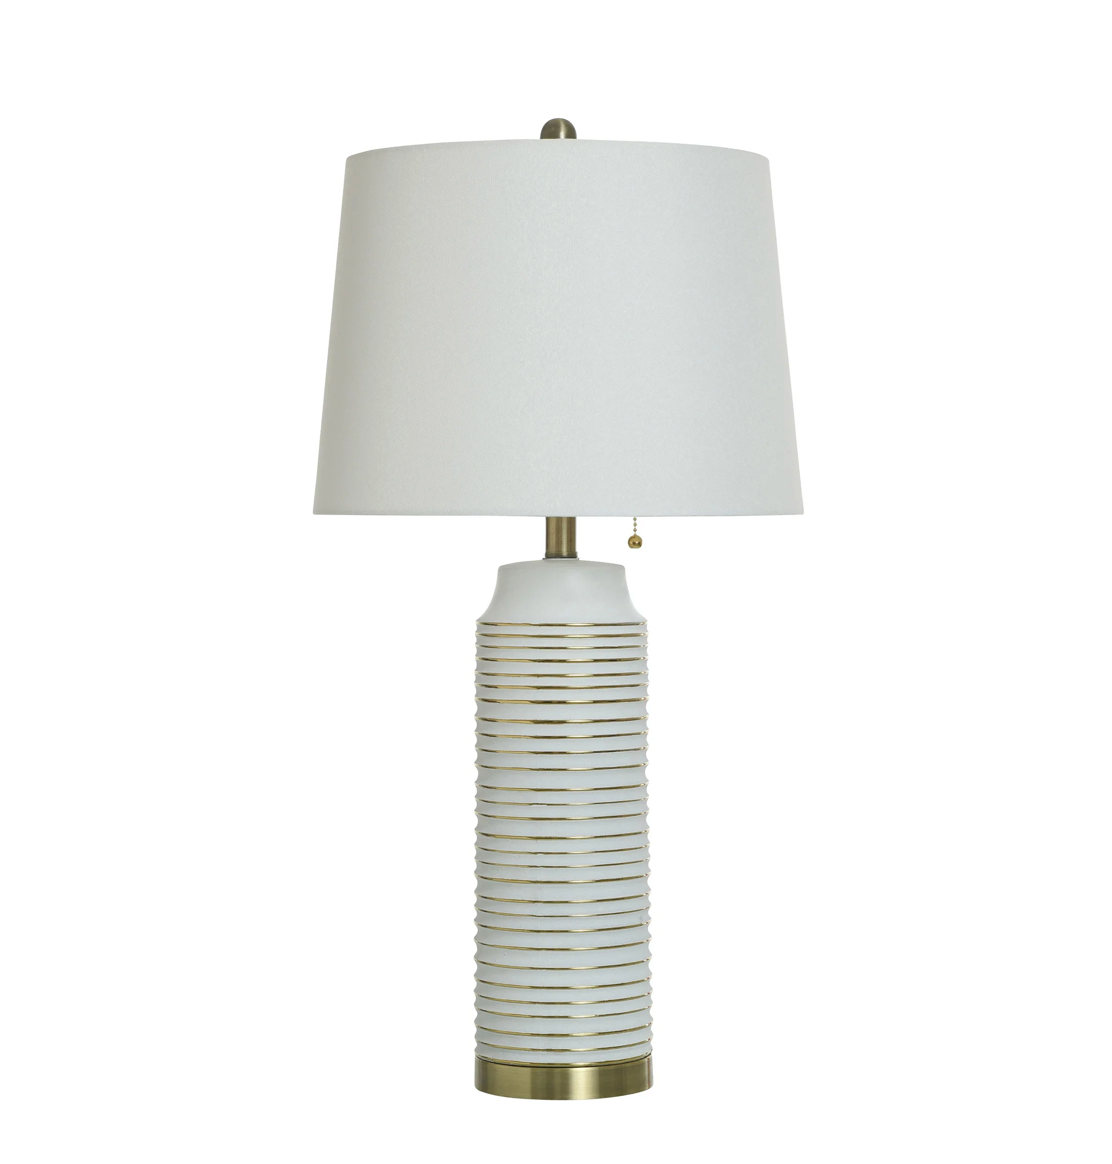 Khelani 30" Ceramic Table Lamp - White + Gold